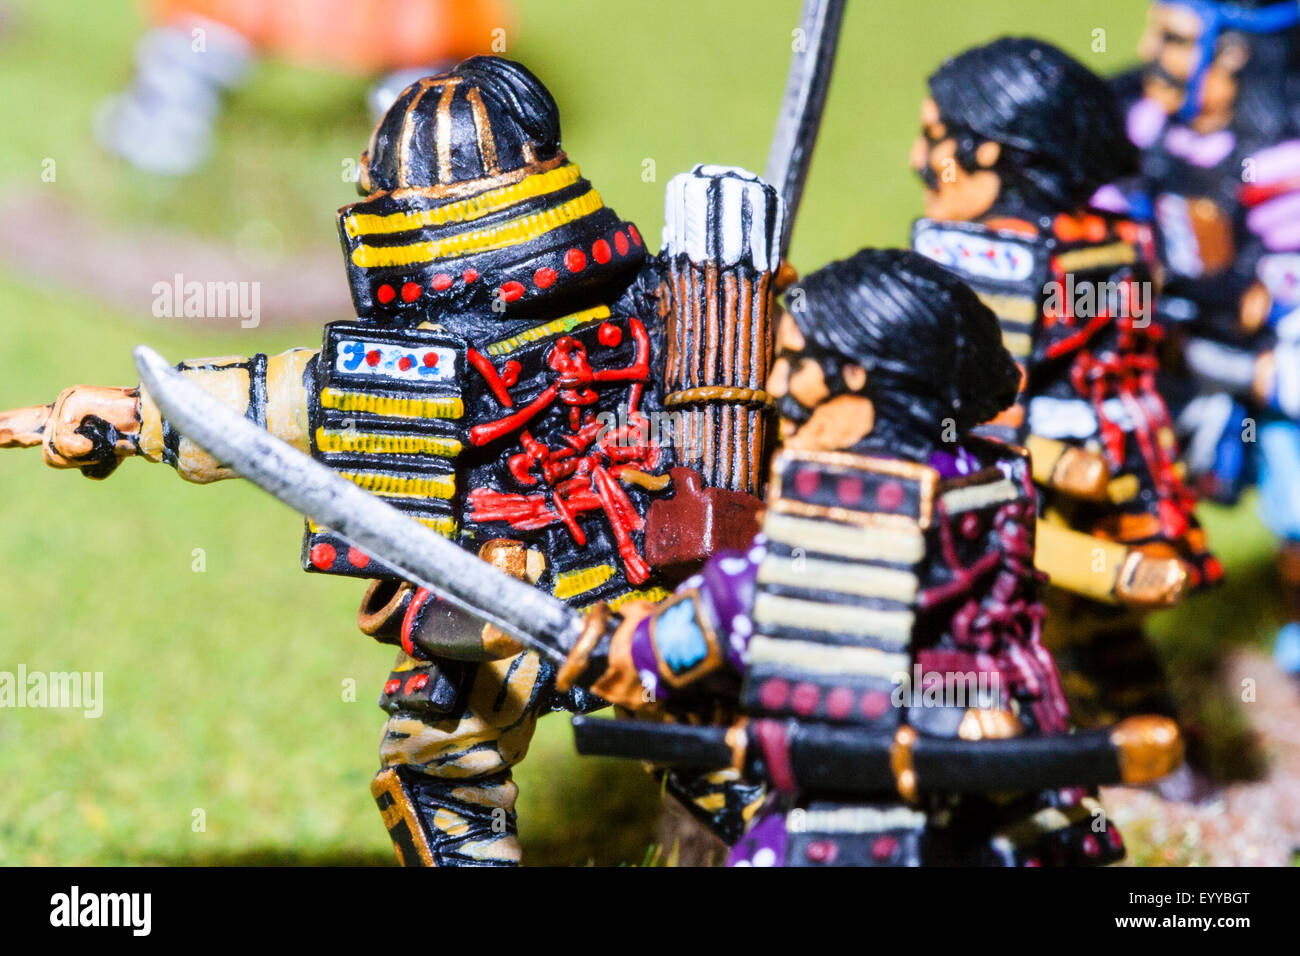 samurai warriors figures